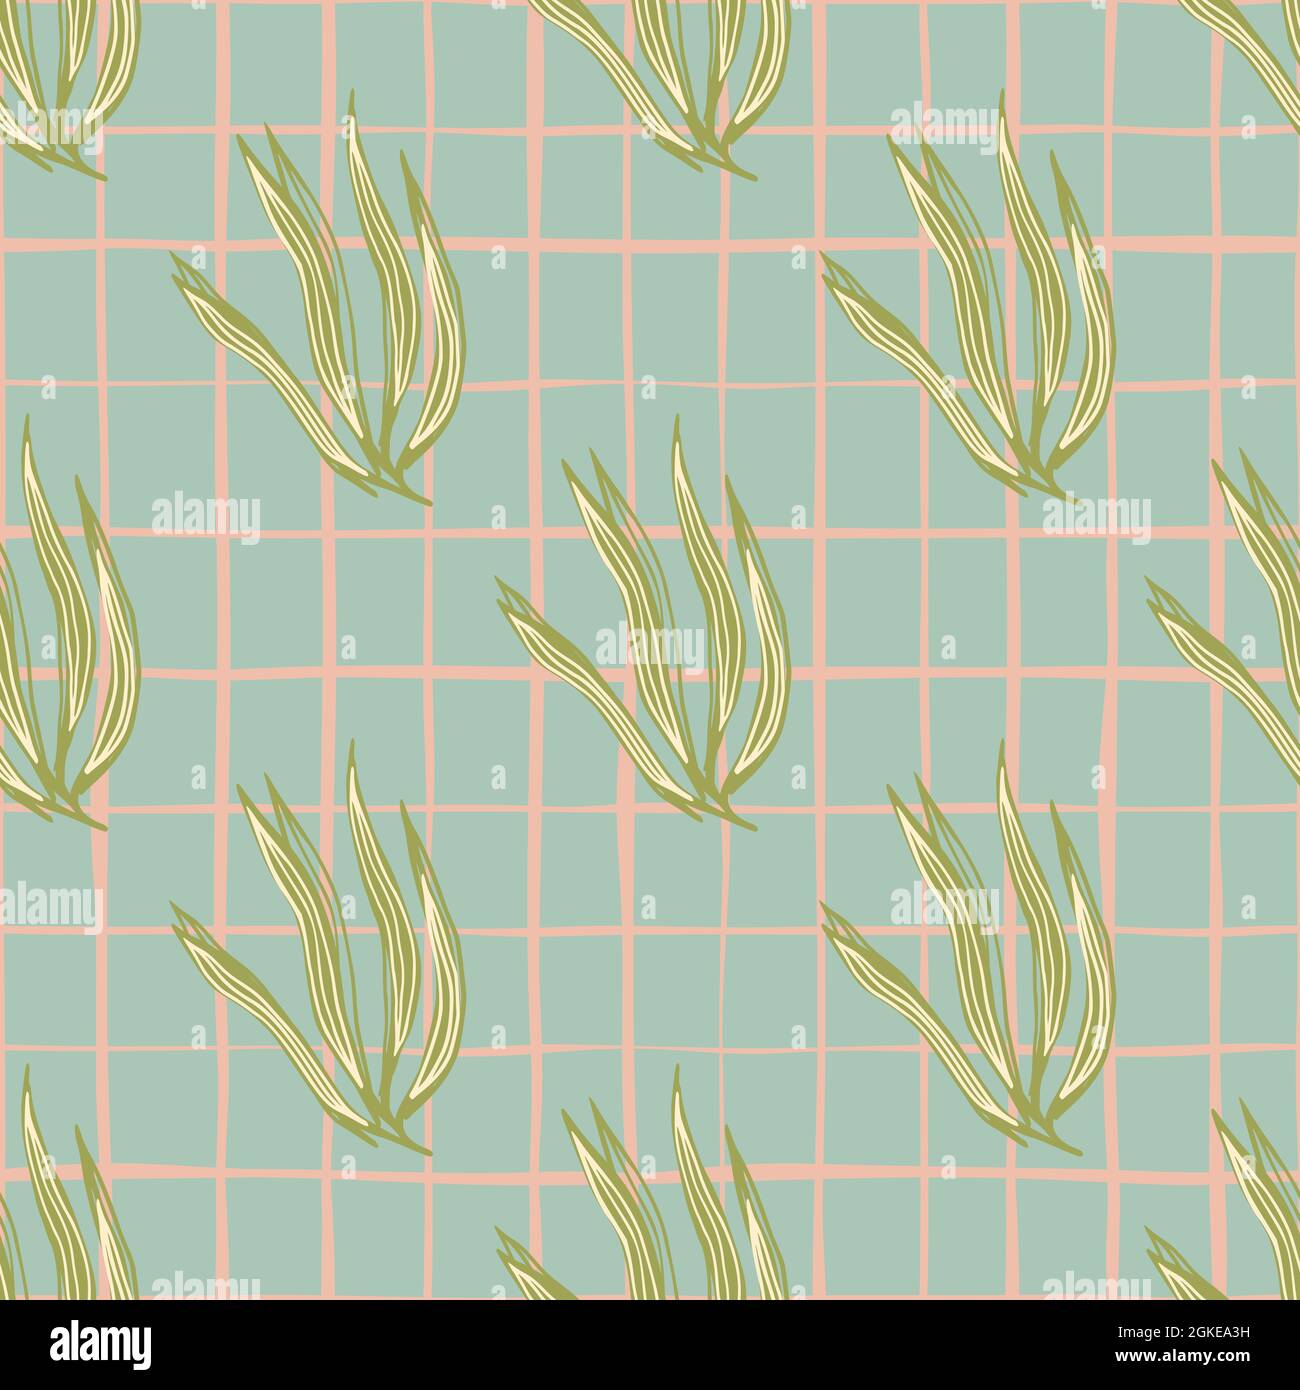 Vintage grüne Algen nahtloses Muster. Tapete mit Meerespflanzen.  Unterwasser Laub Hintergrund. Design für Stoff, Textildruck, Verpackung,  Bezug. Vect Stock-Vektorgrafik - Alamy